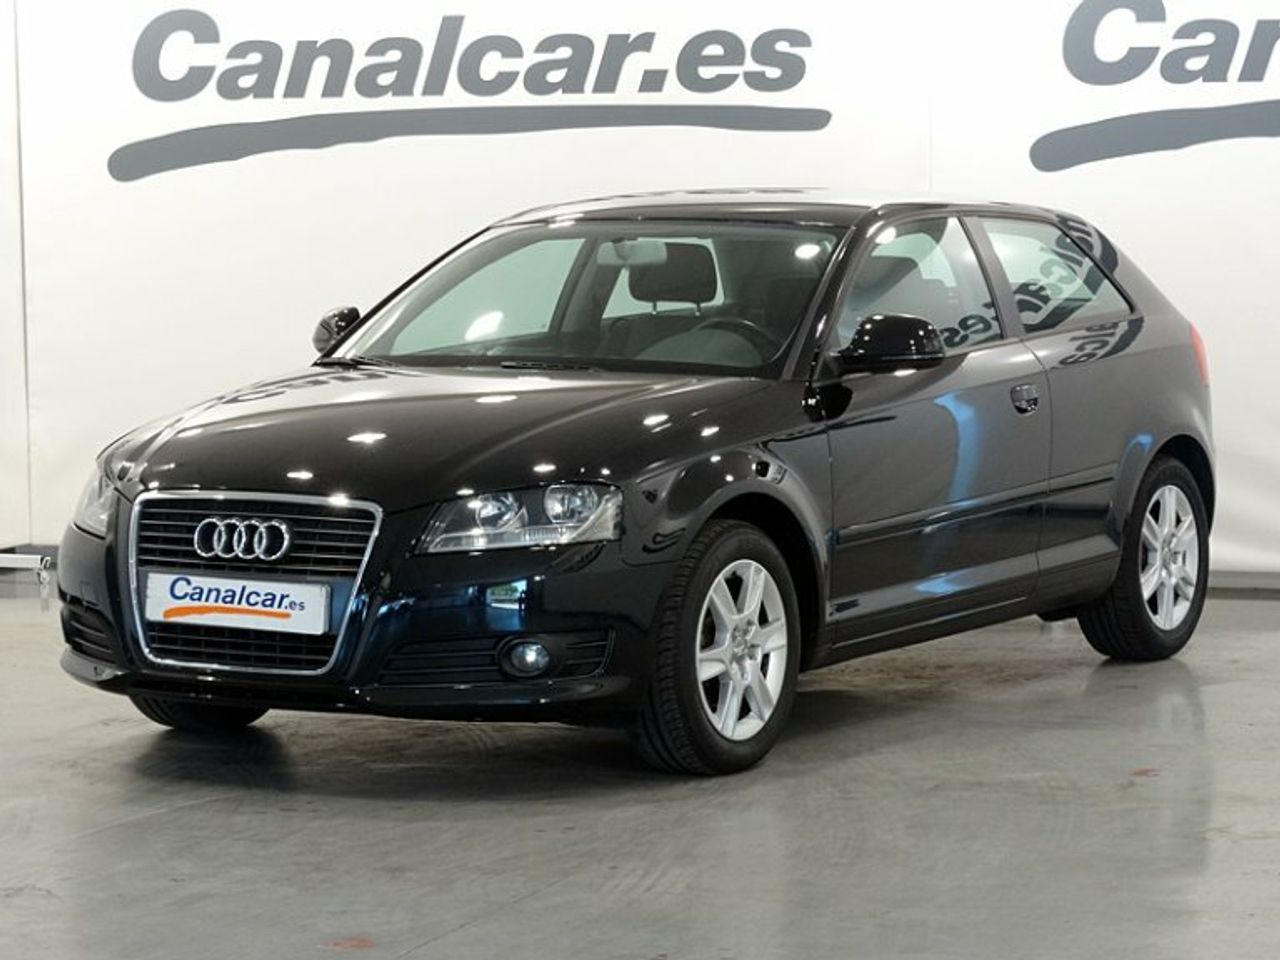 Audi A3 ocasión segunda mano 2010 Diésel por 6.950€ en Madrid